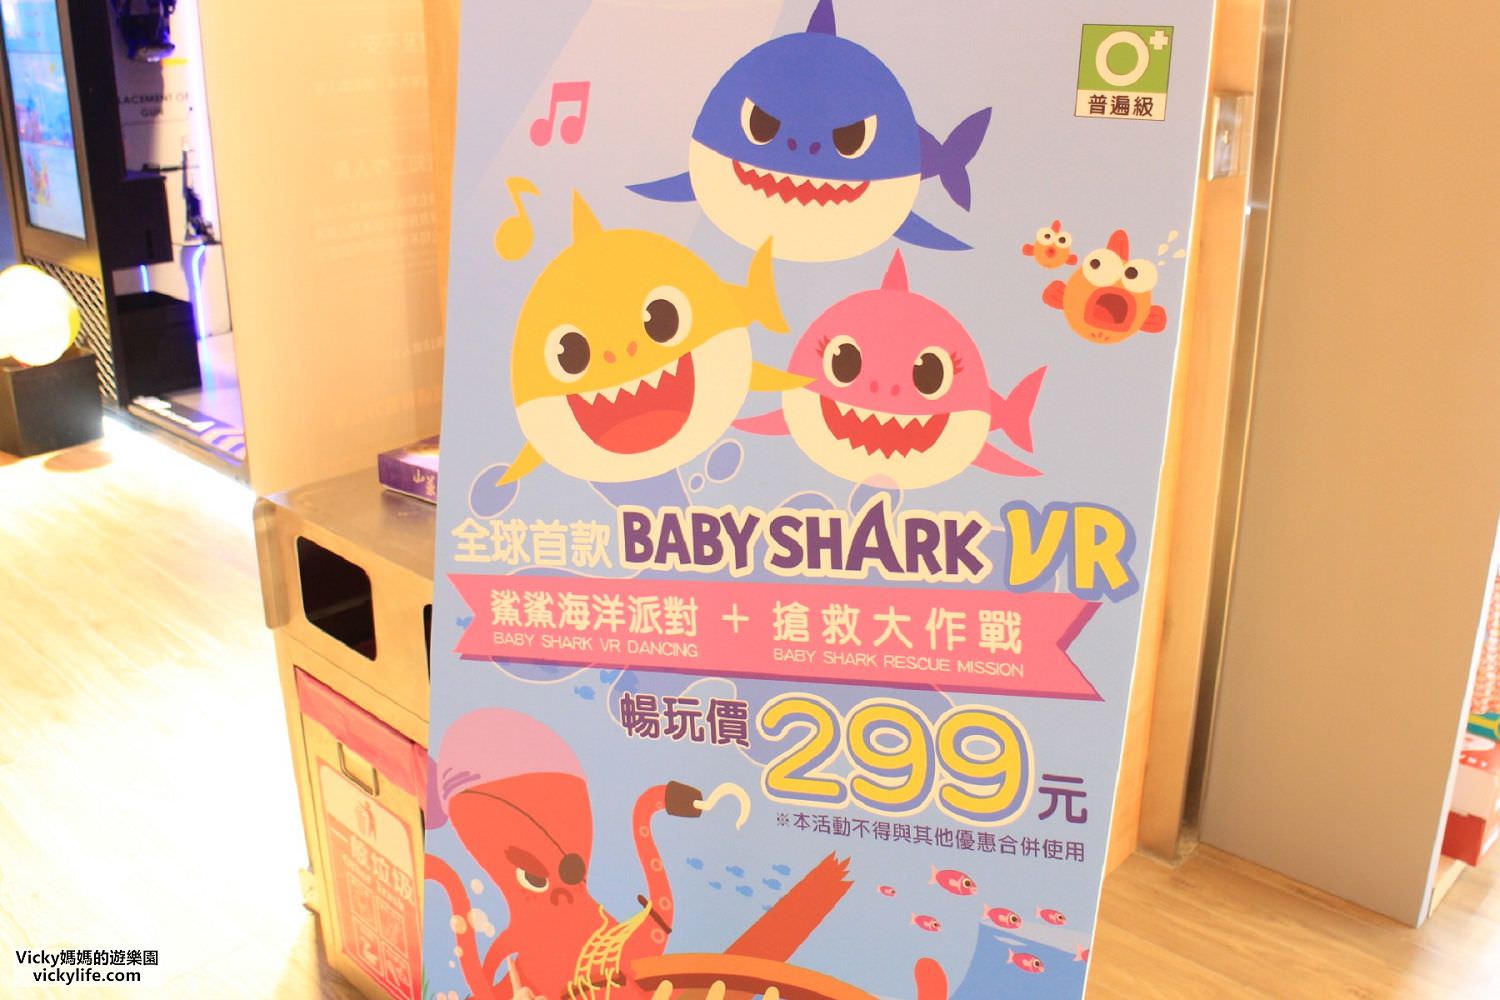 VAR LIVE TW︱全球獨家首款VR遊戲Baby Shark鯊鯊海洋派對+搶救大作戰：現正推出玩到飽方案，快到悅誠廣場享受親子同樂